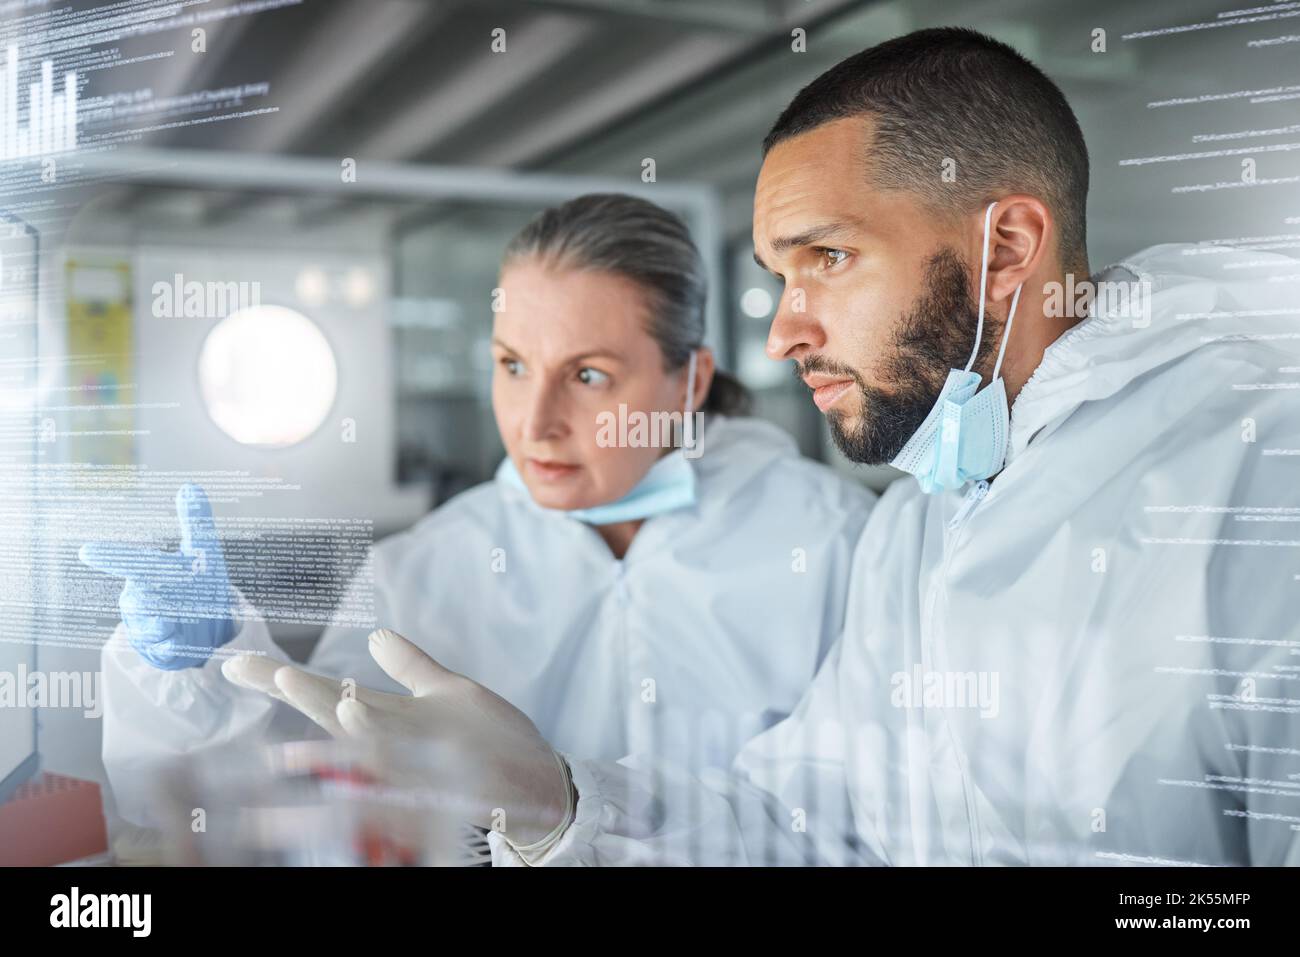 Wissenschaft, Technologie und Forschung auf futuristischem Bildschirm, der von Wissenschaftlern in einem Labor verwendet wird. Innovation, digitale Transformation und Zukunftstechnologie im Gesundheitswesen Stockfoto